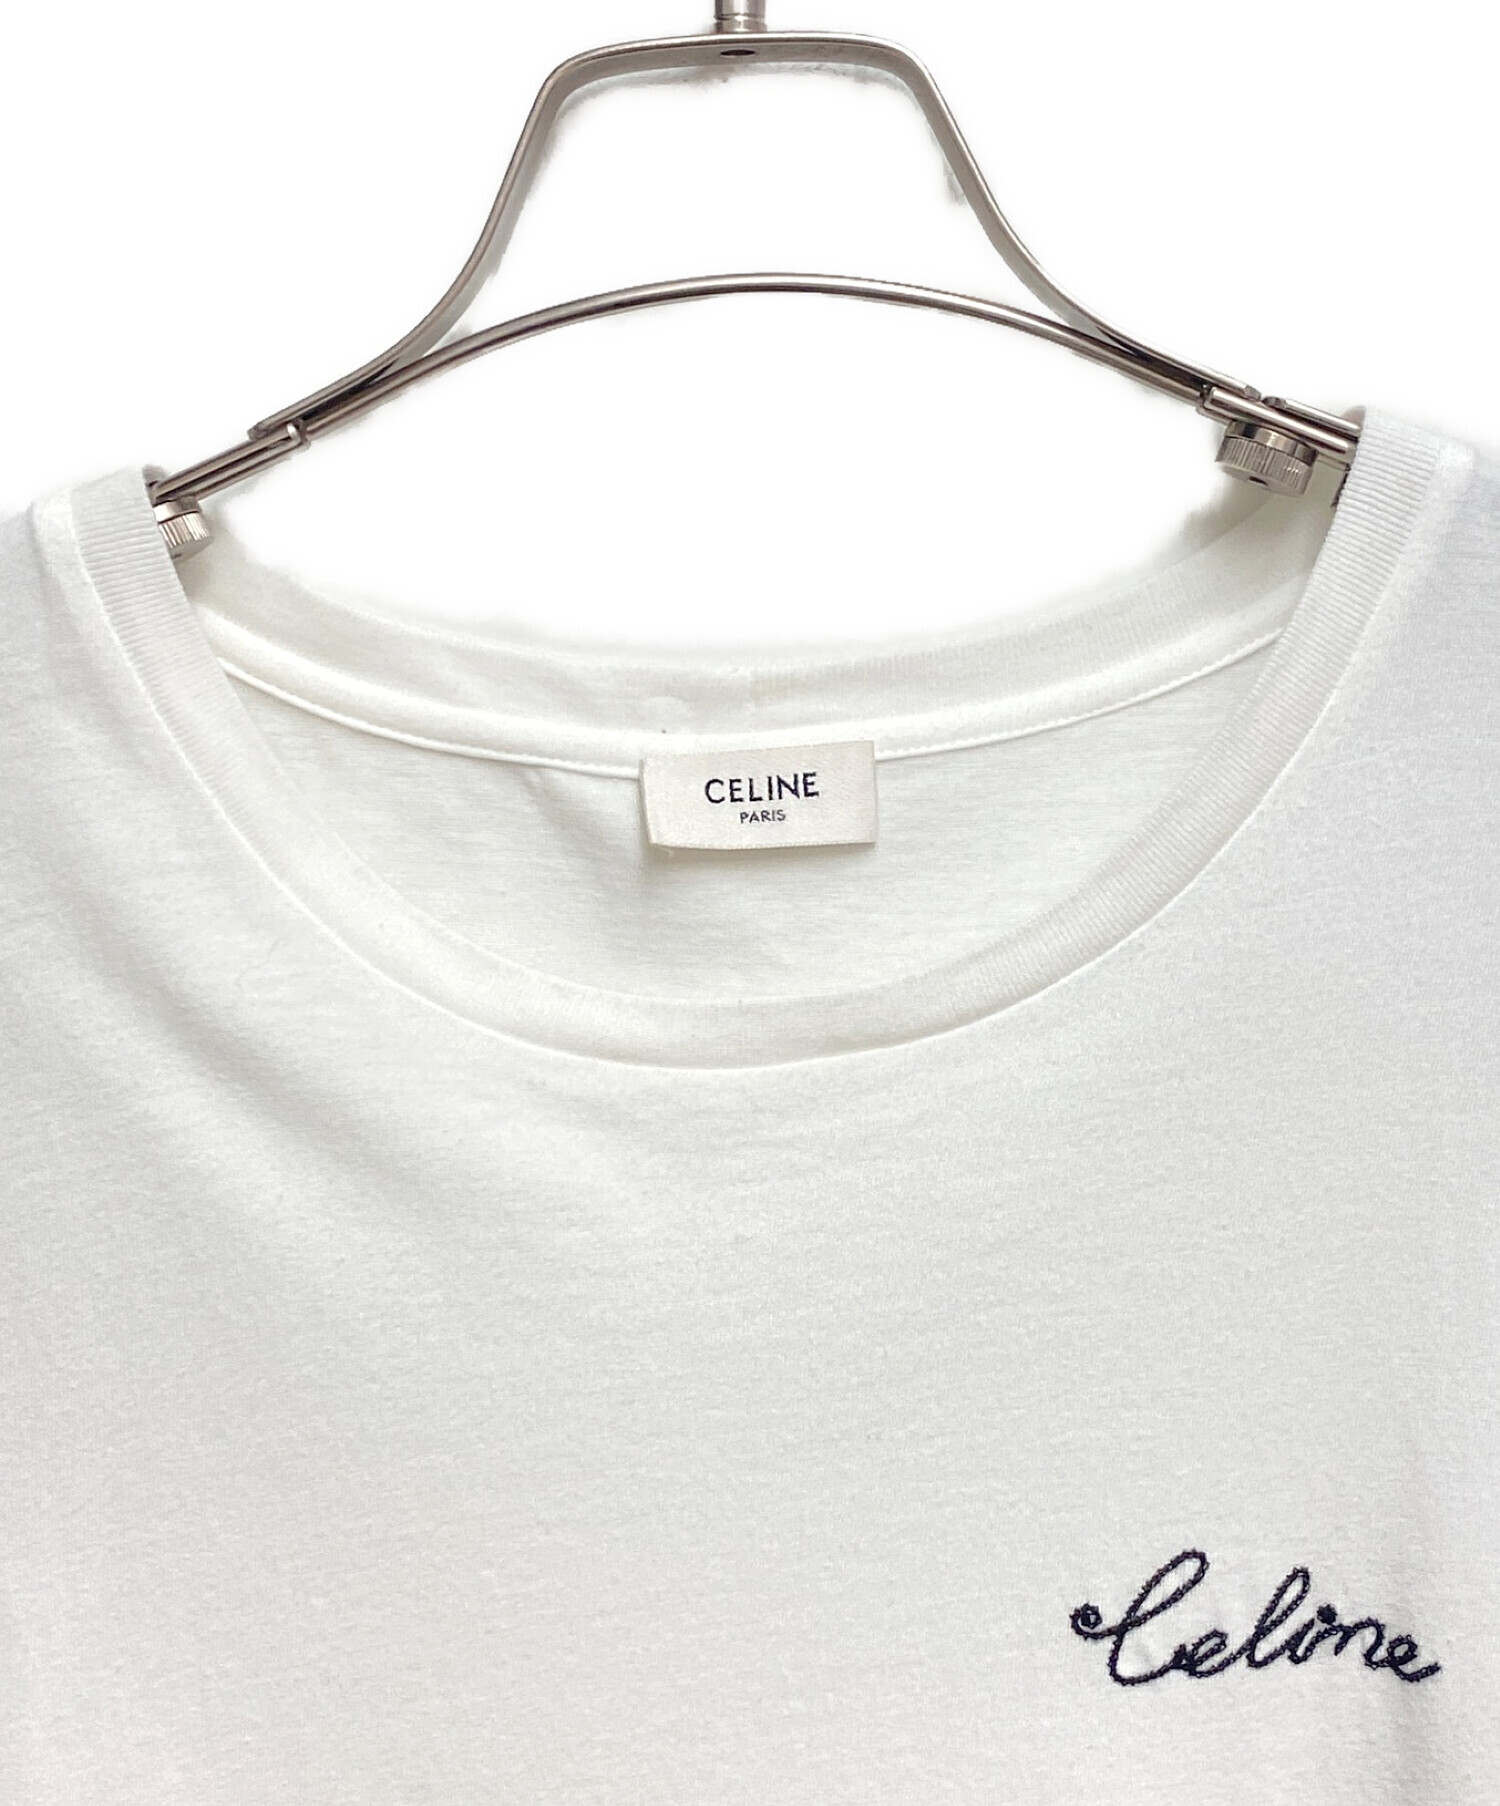 CELINE (セリーヌ) エンブロイダリー Tシャツ ホワイト サイズ:M